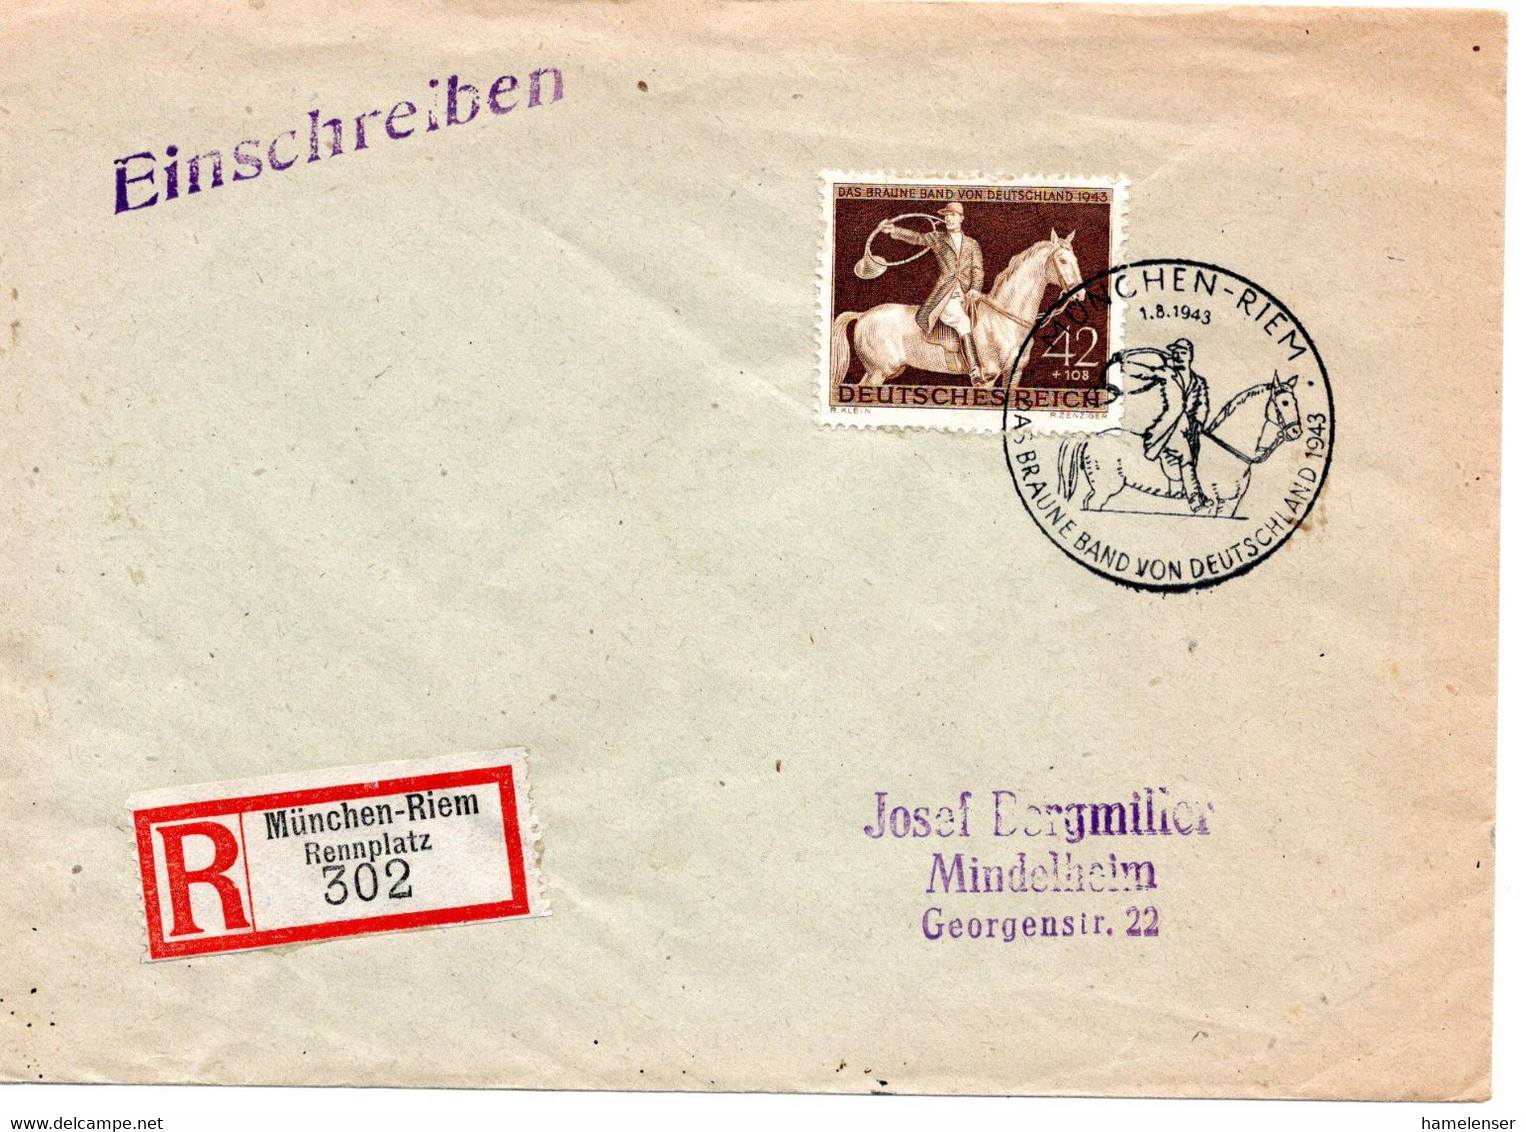 55158 - Deutsches Reich - 1943 - 42Pfg Braunes Band EF A R-Bf SoStpl MUENCHEN-RIEM - DAS BRAUNE BAND ... -> MINDELHEIM - Hippisme